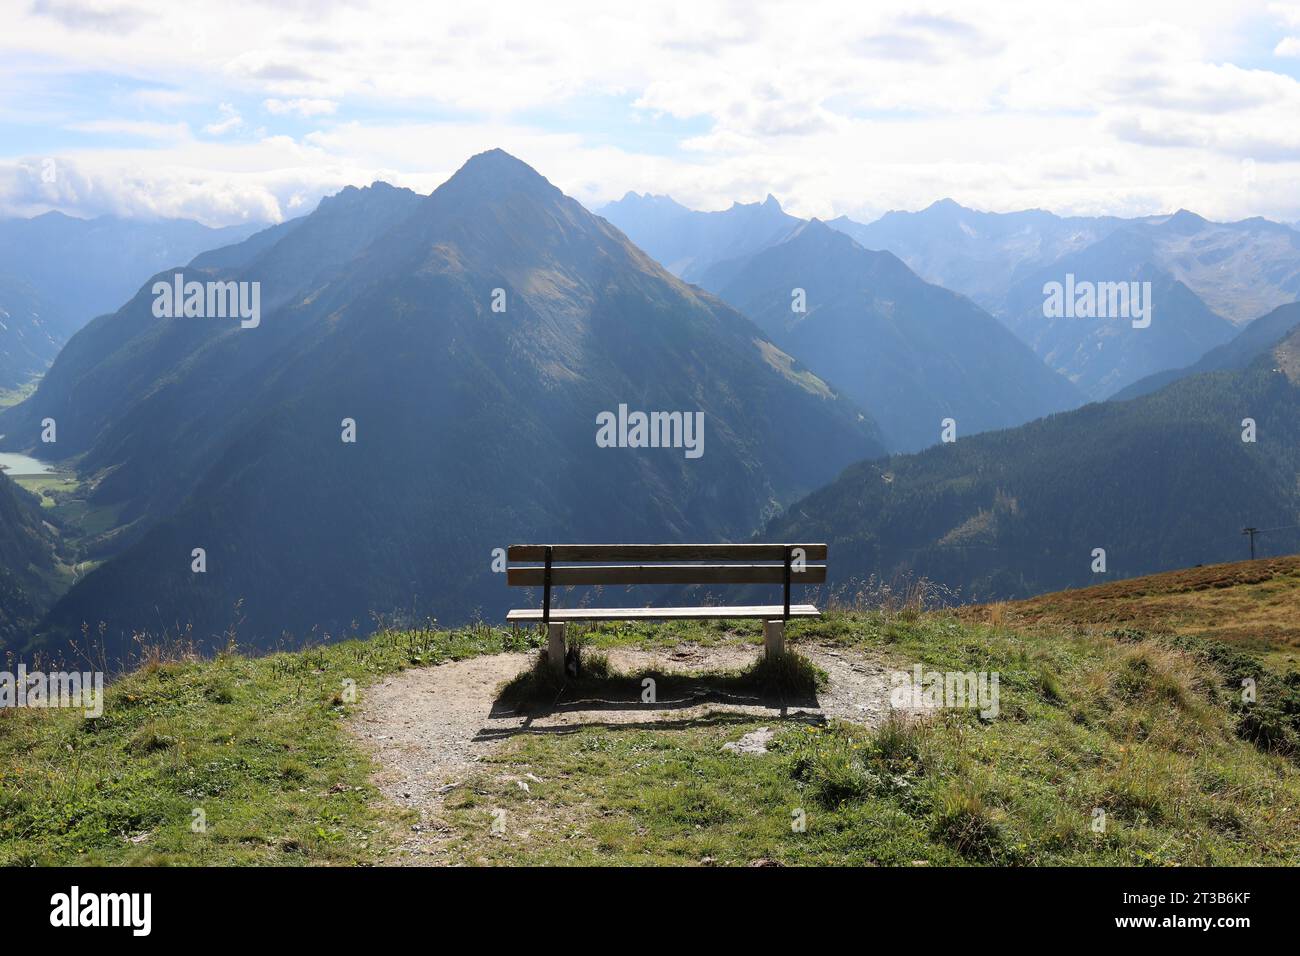 Vue d'un banc en bois sur un plateau de montagne devant une magnifique toile de fond de montagne Banque D'Images